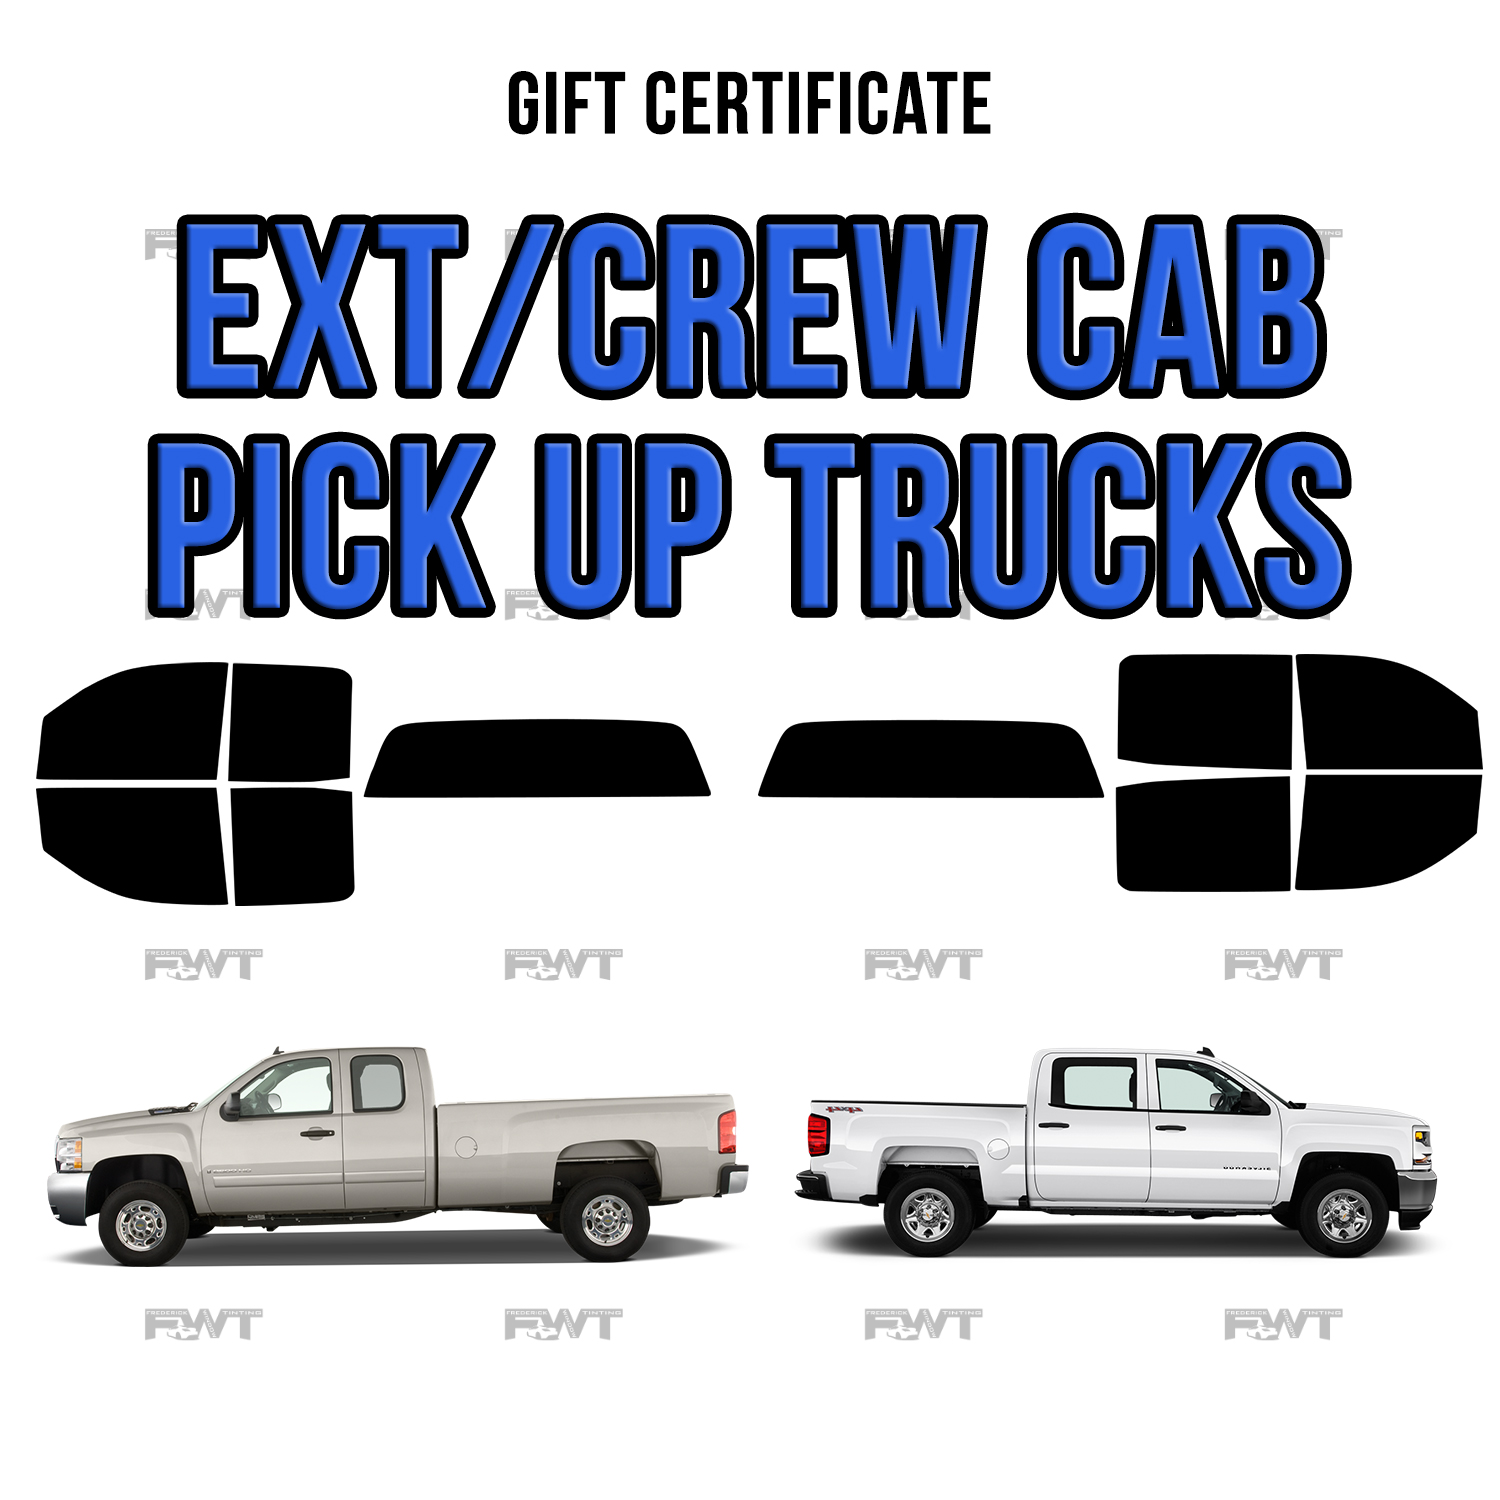 Ext/Crew Cab Trucks - $300.00